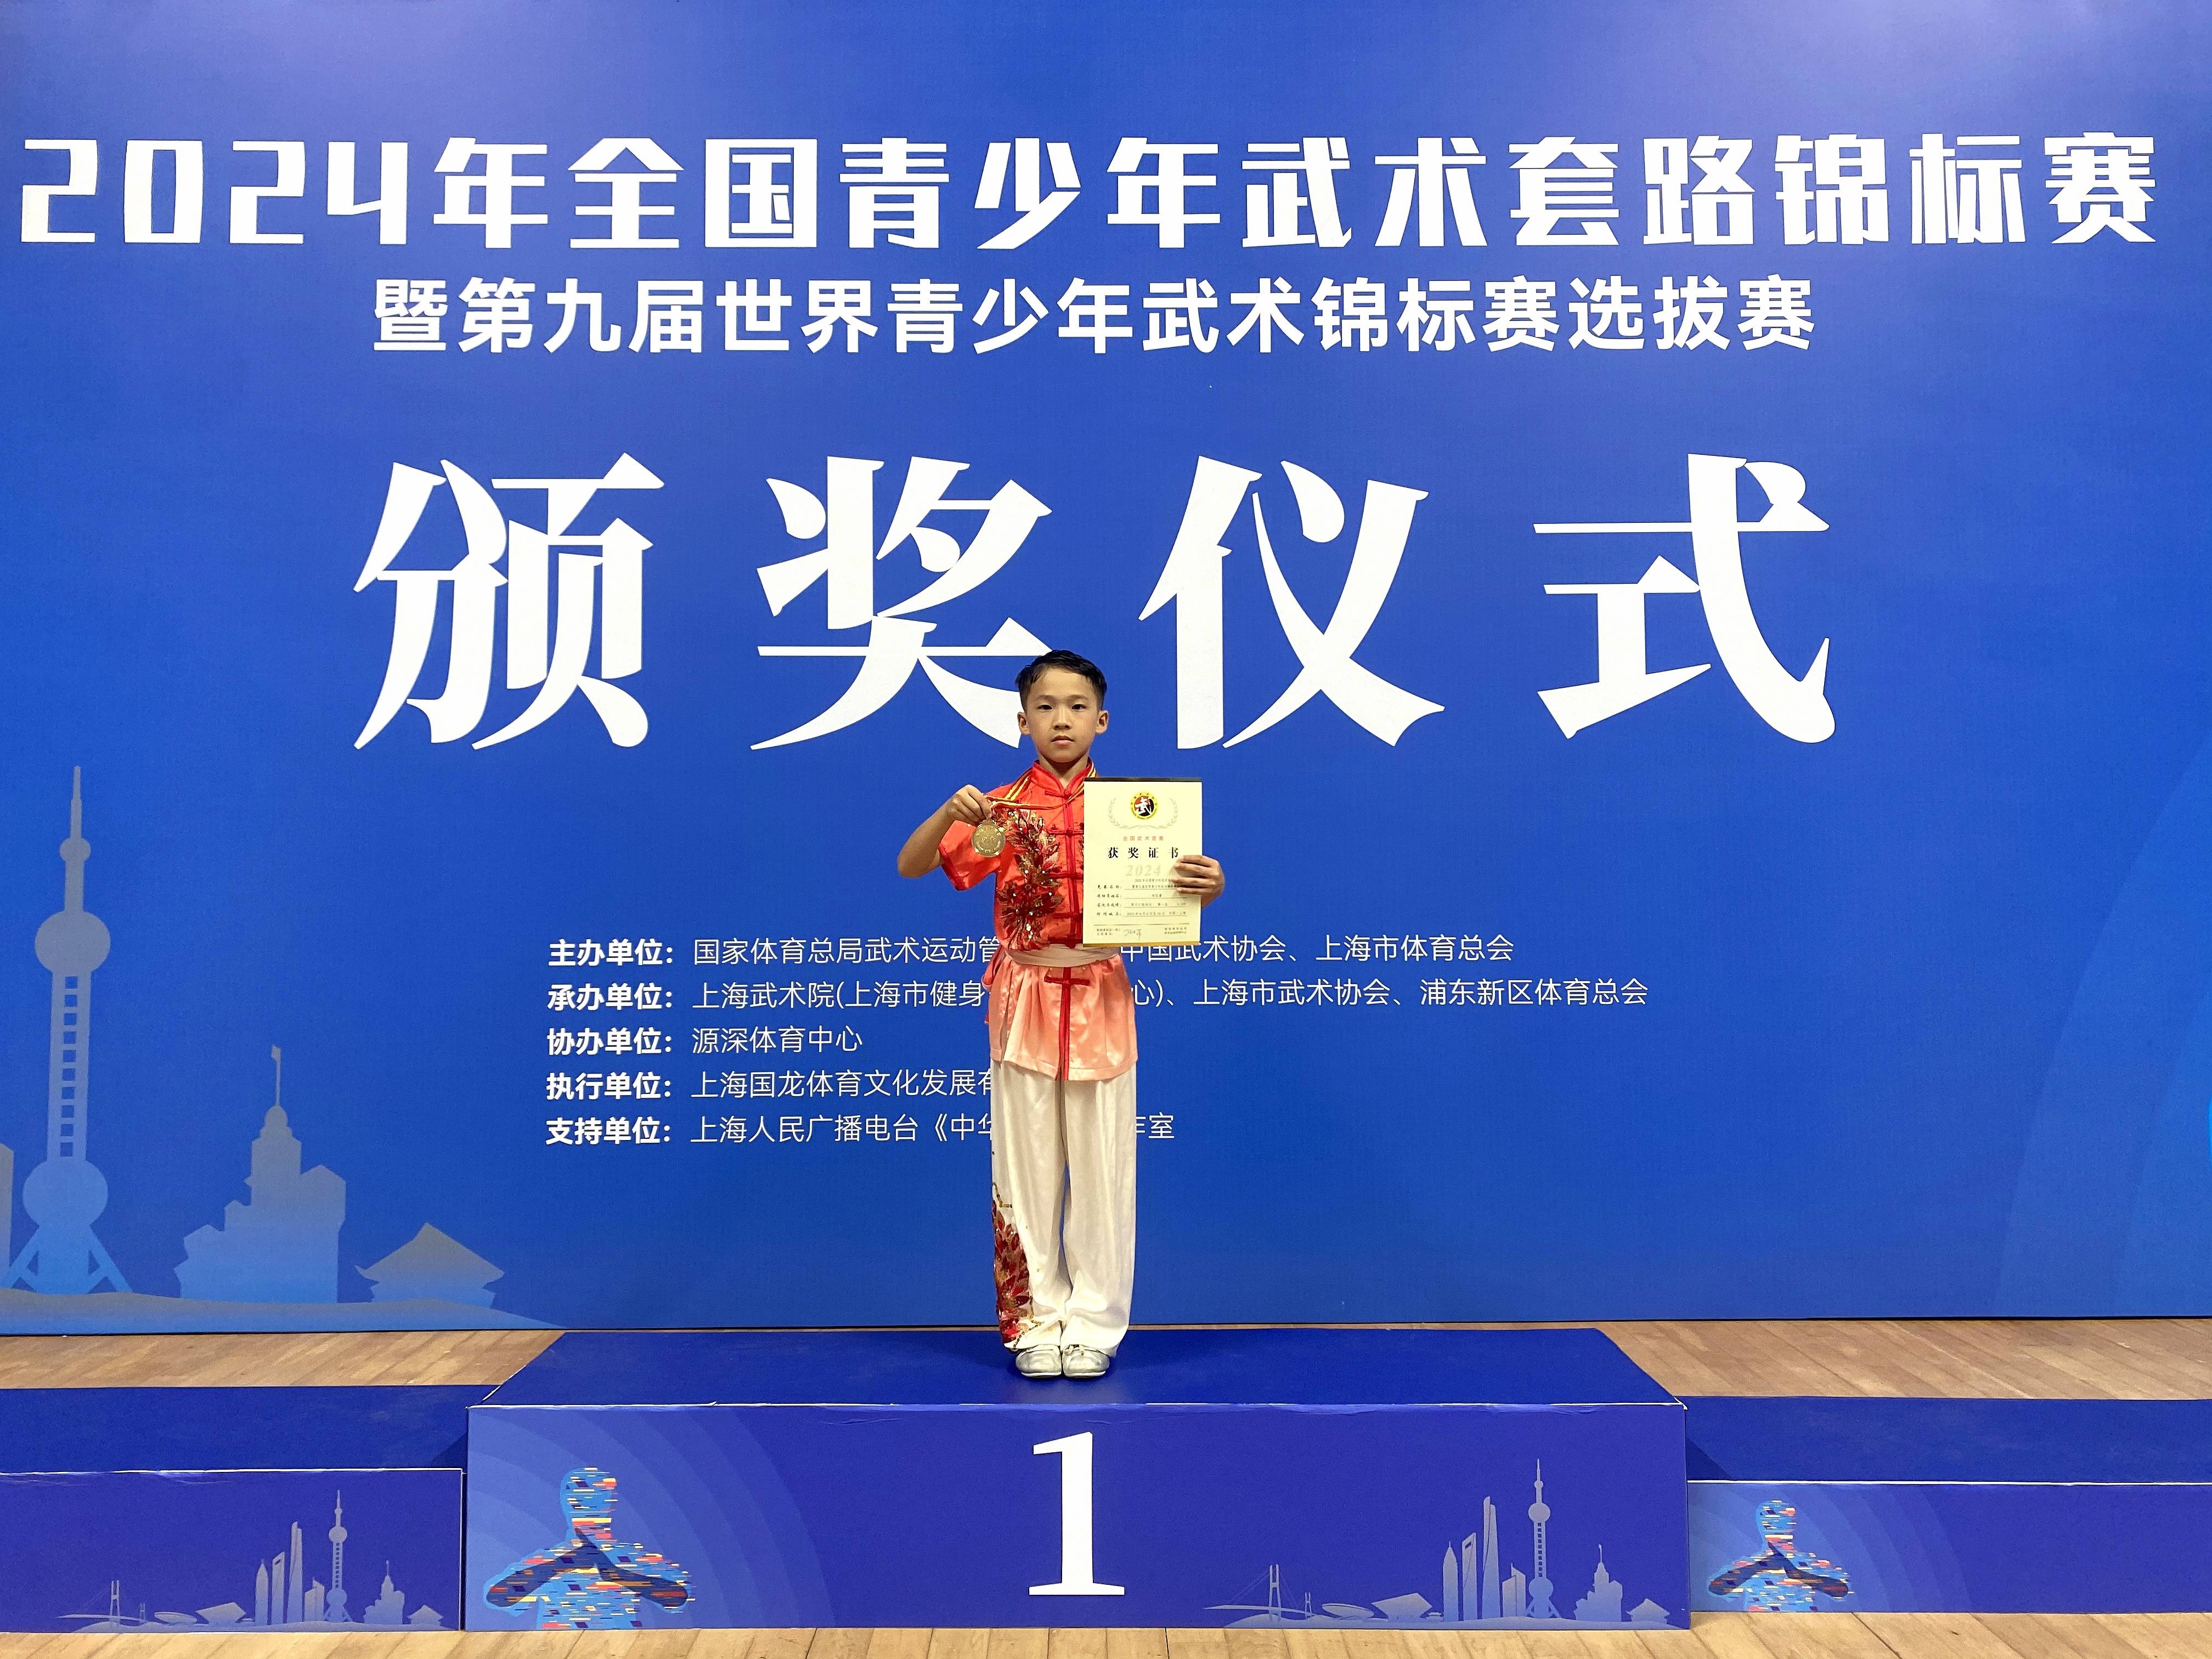 全国青少年武术套路锦标赛在沪闭幕 清远学生代表广东出战获得金牌